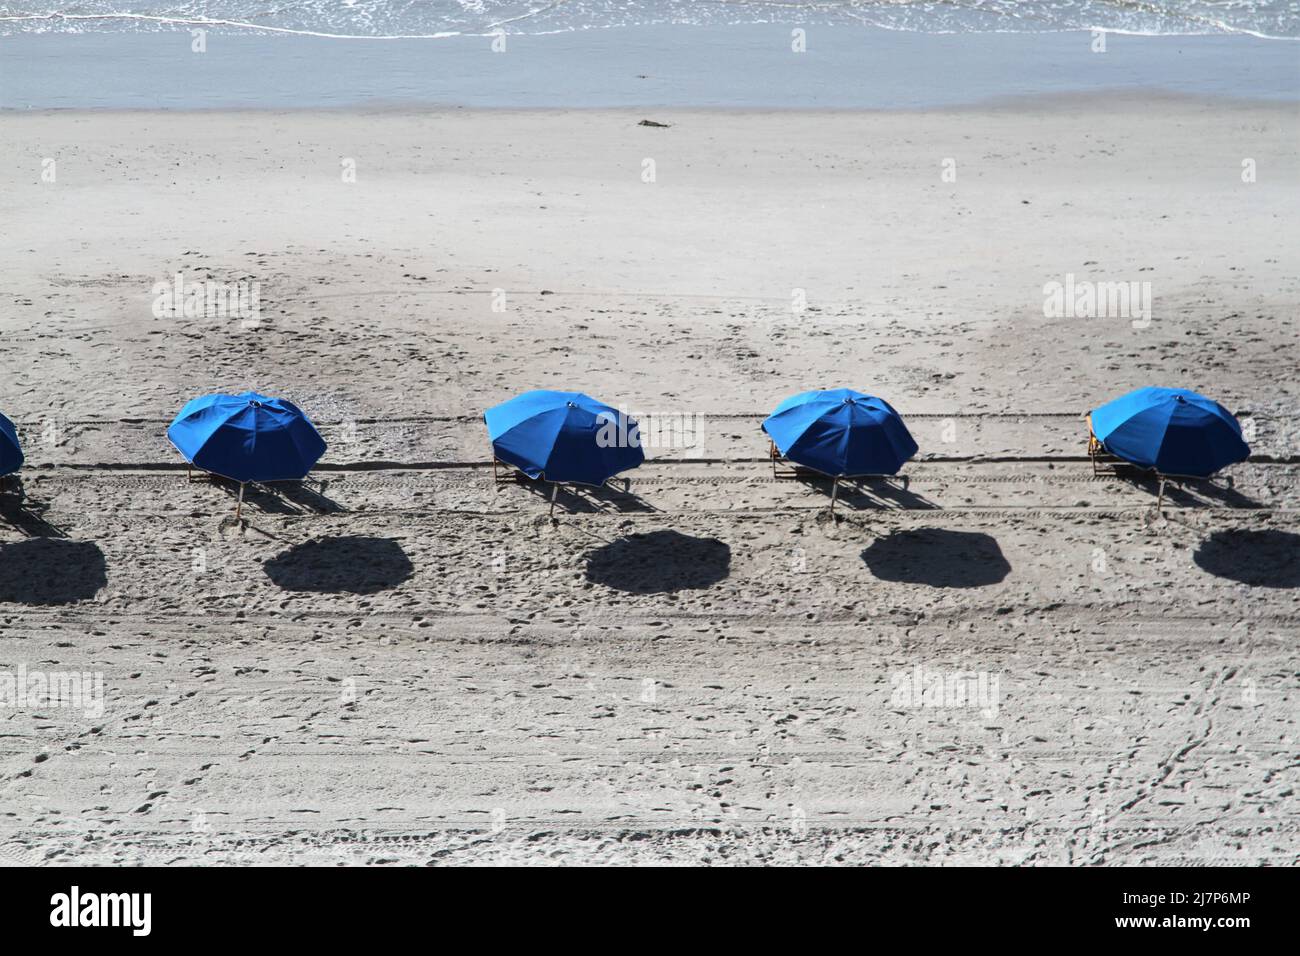 Plage avec parasols bleus et réflexions sur le sable Banque D'Images